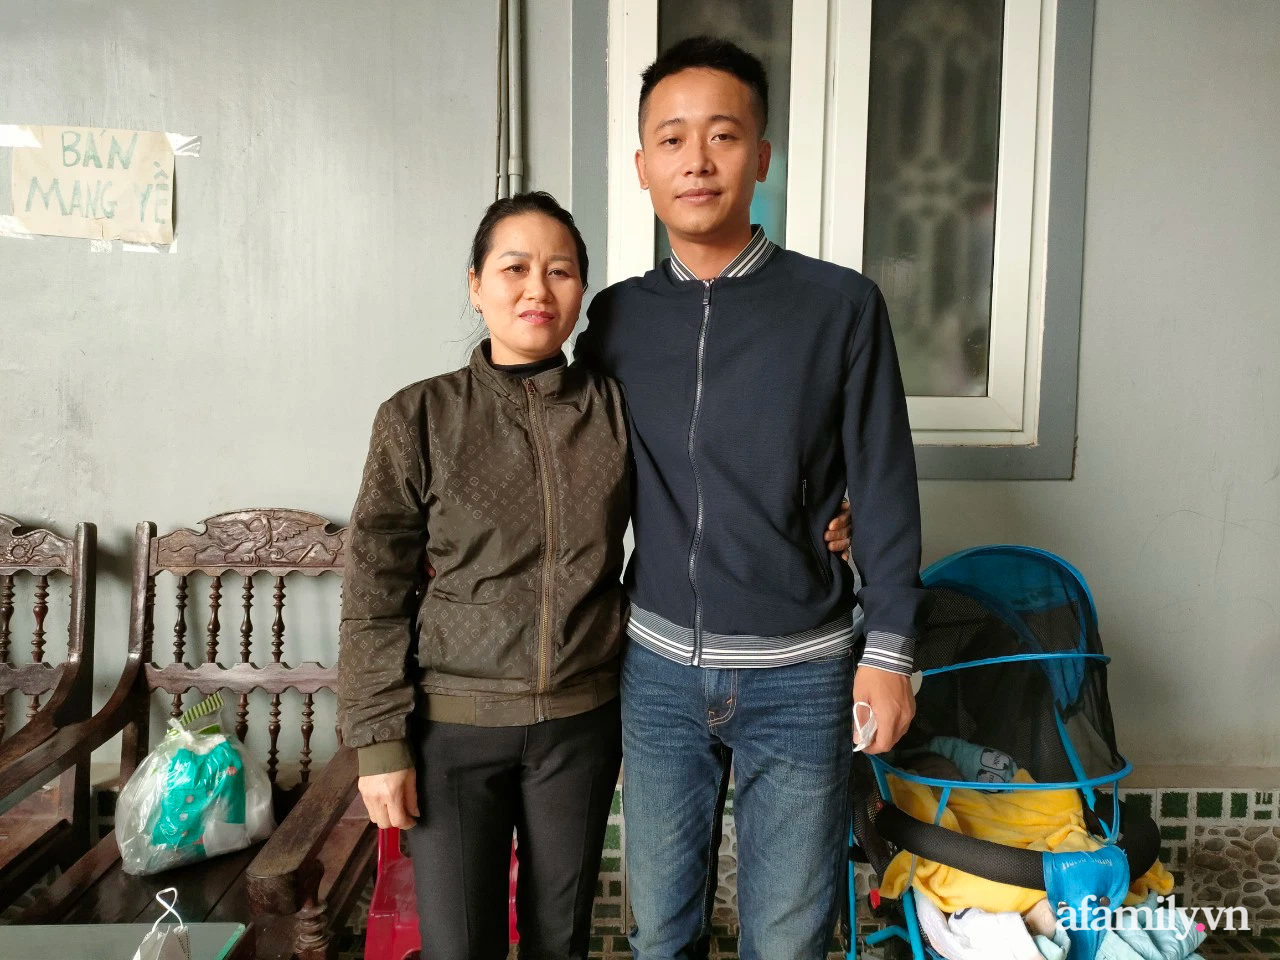 Tết đoàn viên bên gia đình của Quang Linh Vlogs- chàng lao động thổi hồn văn hoá Việt khởi sắc đất nước Châu Phi - Ảnh 9.